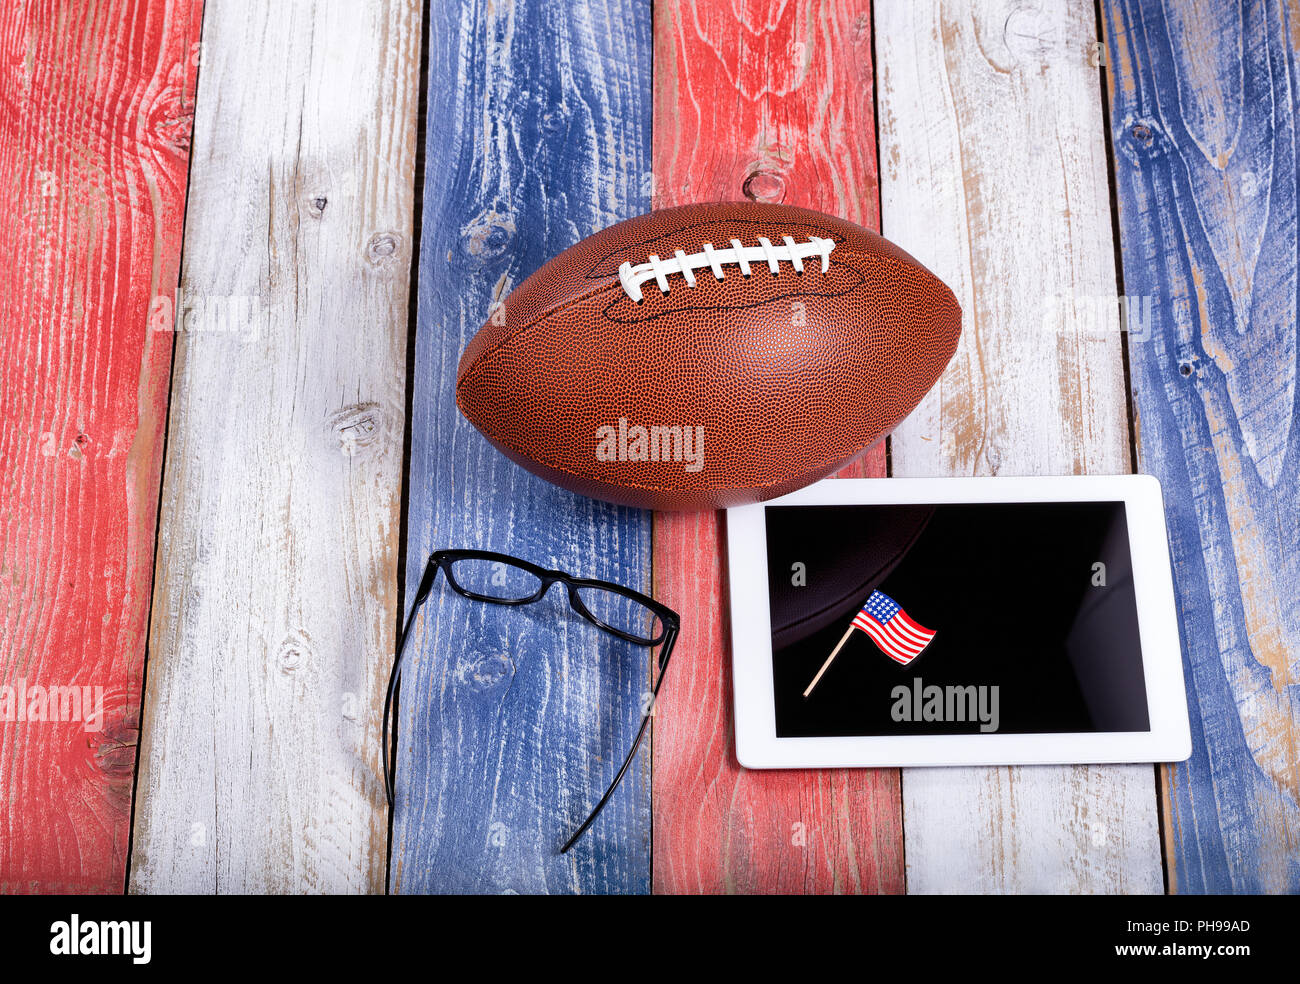 L'analyse de match de football américain avec la technologie informatique Banque D'Images